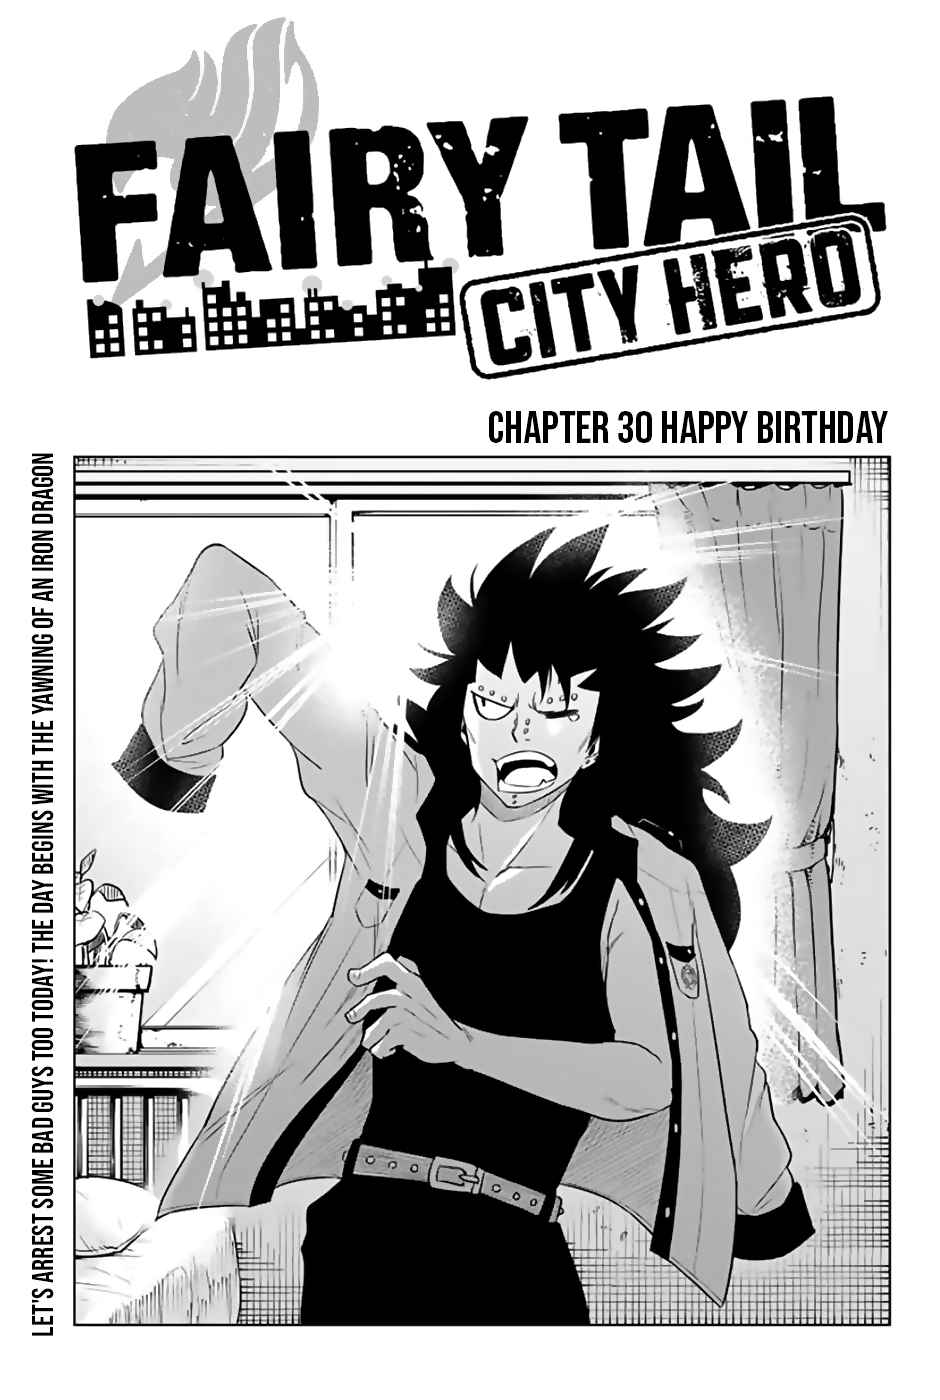 Fairy Tail: City Hero Ch. 30 Happy Birthday